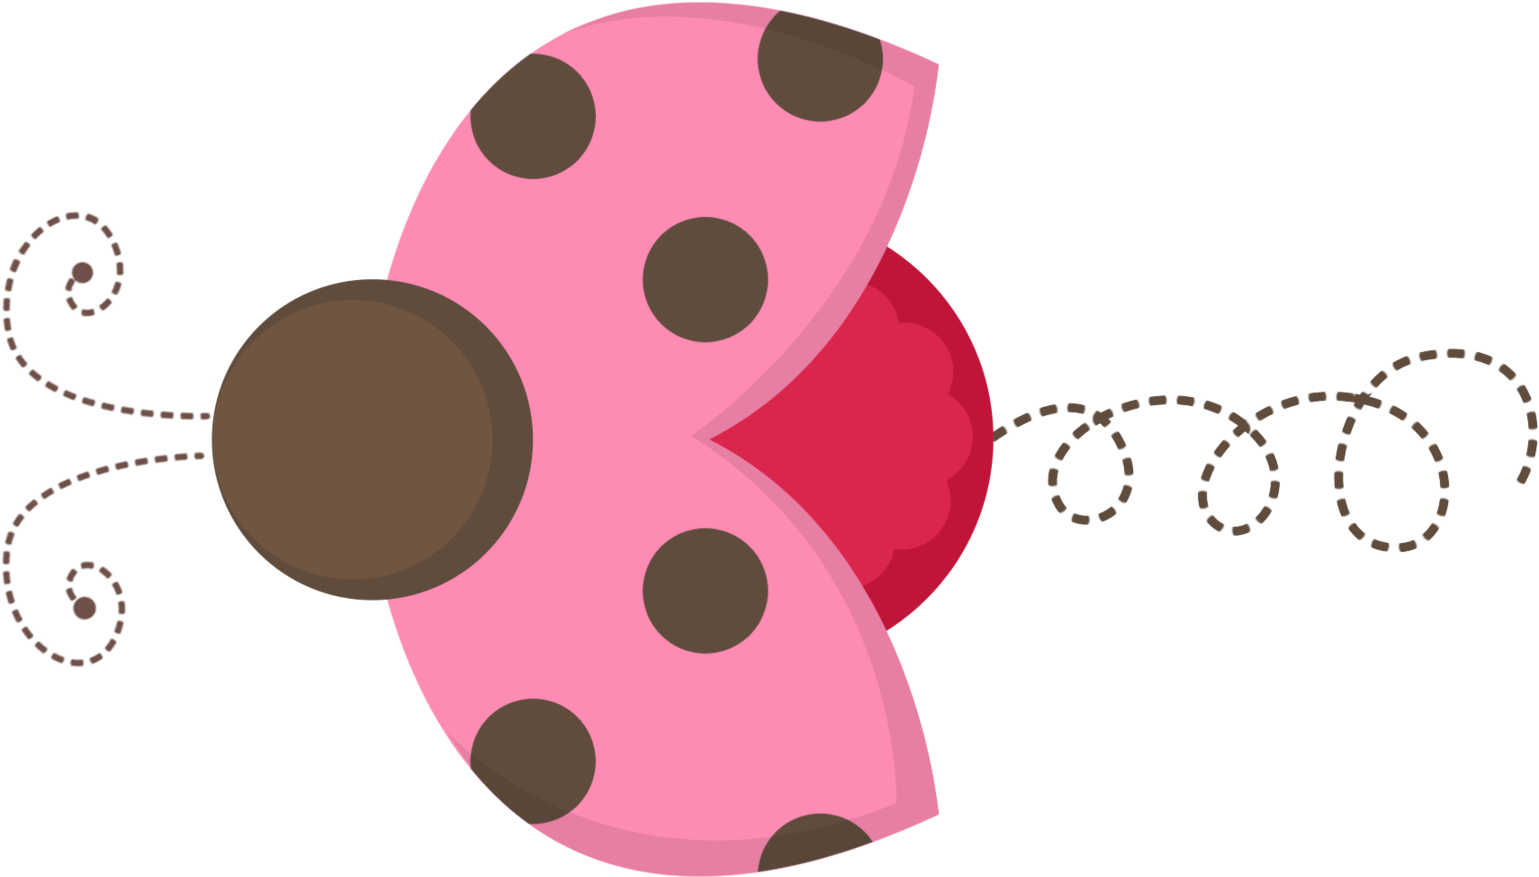 Exibir Todas As Imagens Na Pasta Pink And Brown Ladybugs - Exibir Todas As Imagens Na Pasta Pink And Brown Ladybugs (1620x1080)